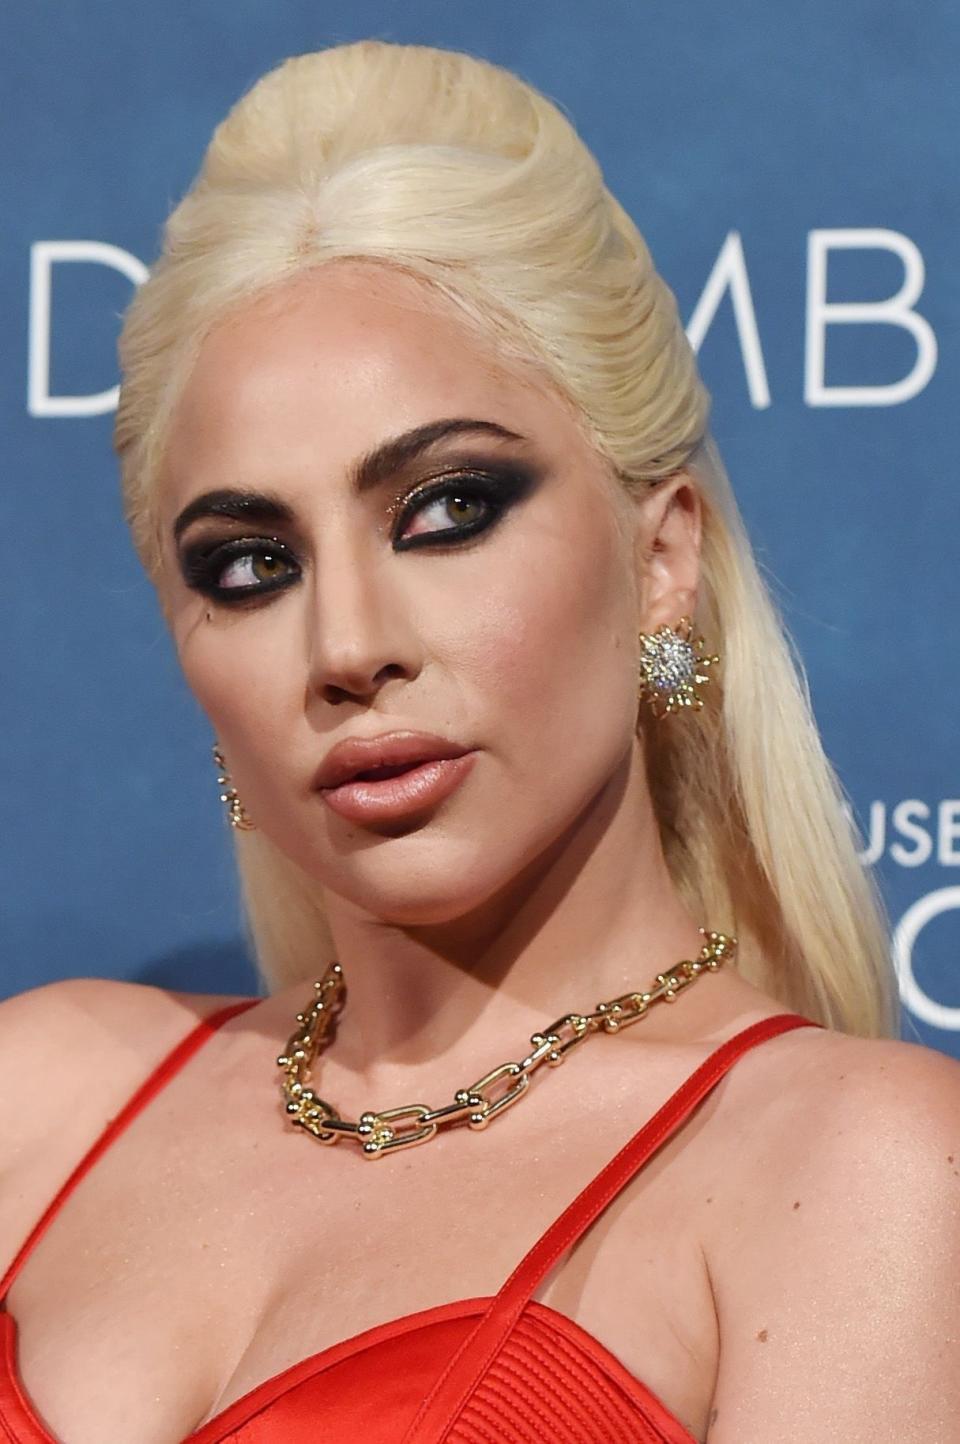 Close-up of Gaga wearing dramatic eye makeup